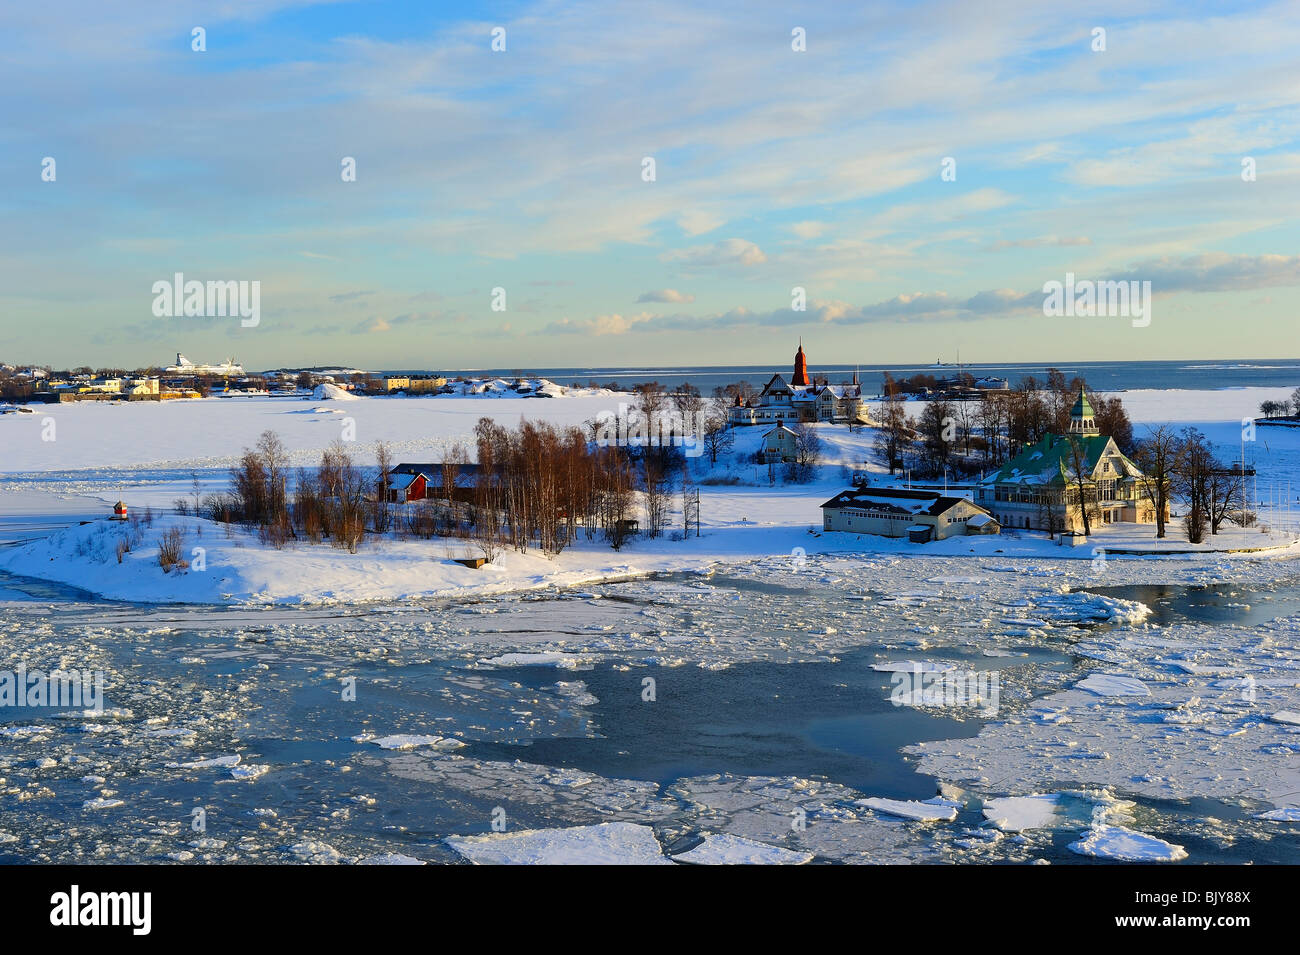 Icy Baltic sea at Katajanokka Helsinki, with Finnish houses on Valkosaari and Luoto islands Stock Photo